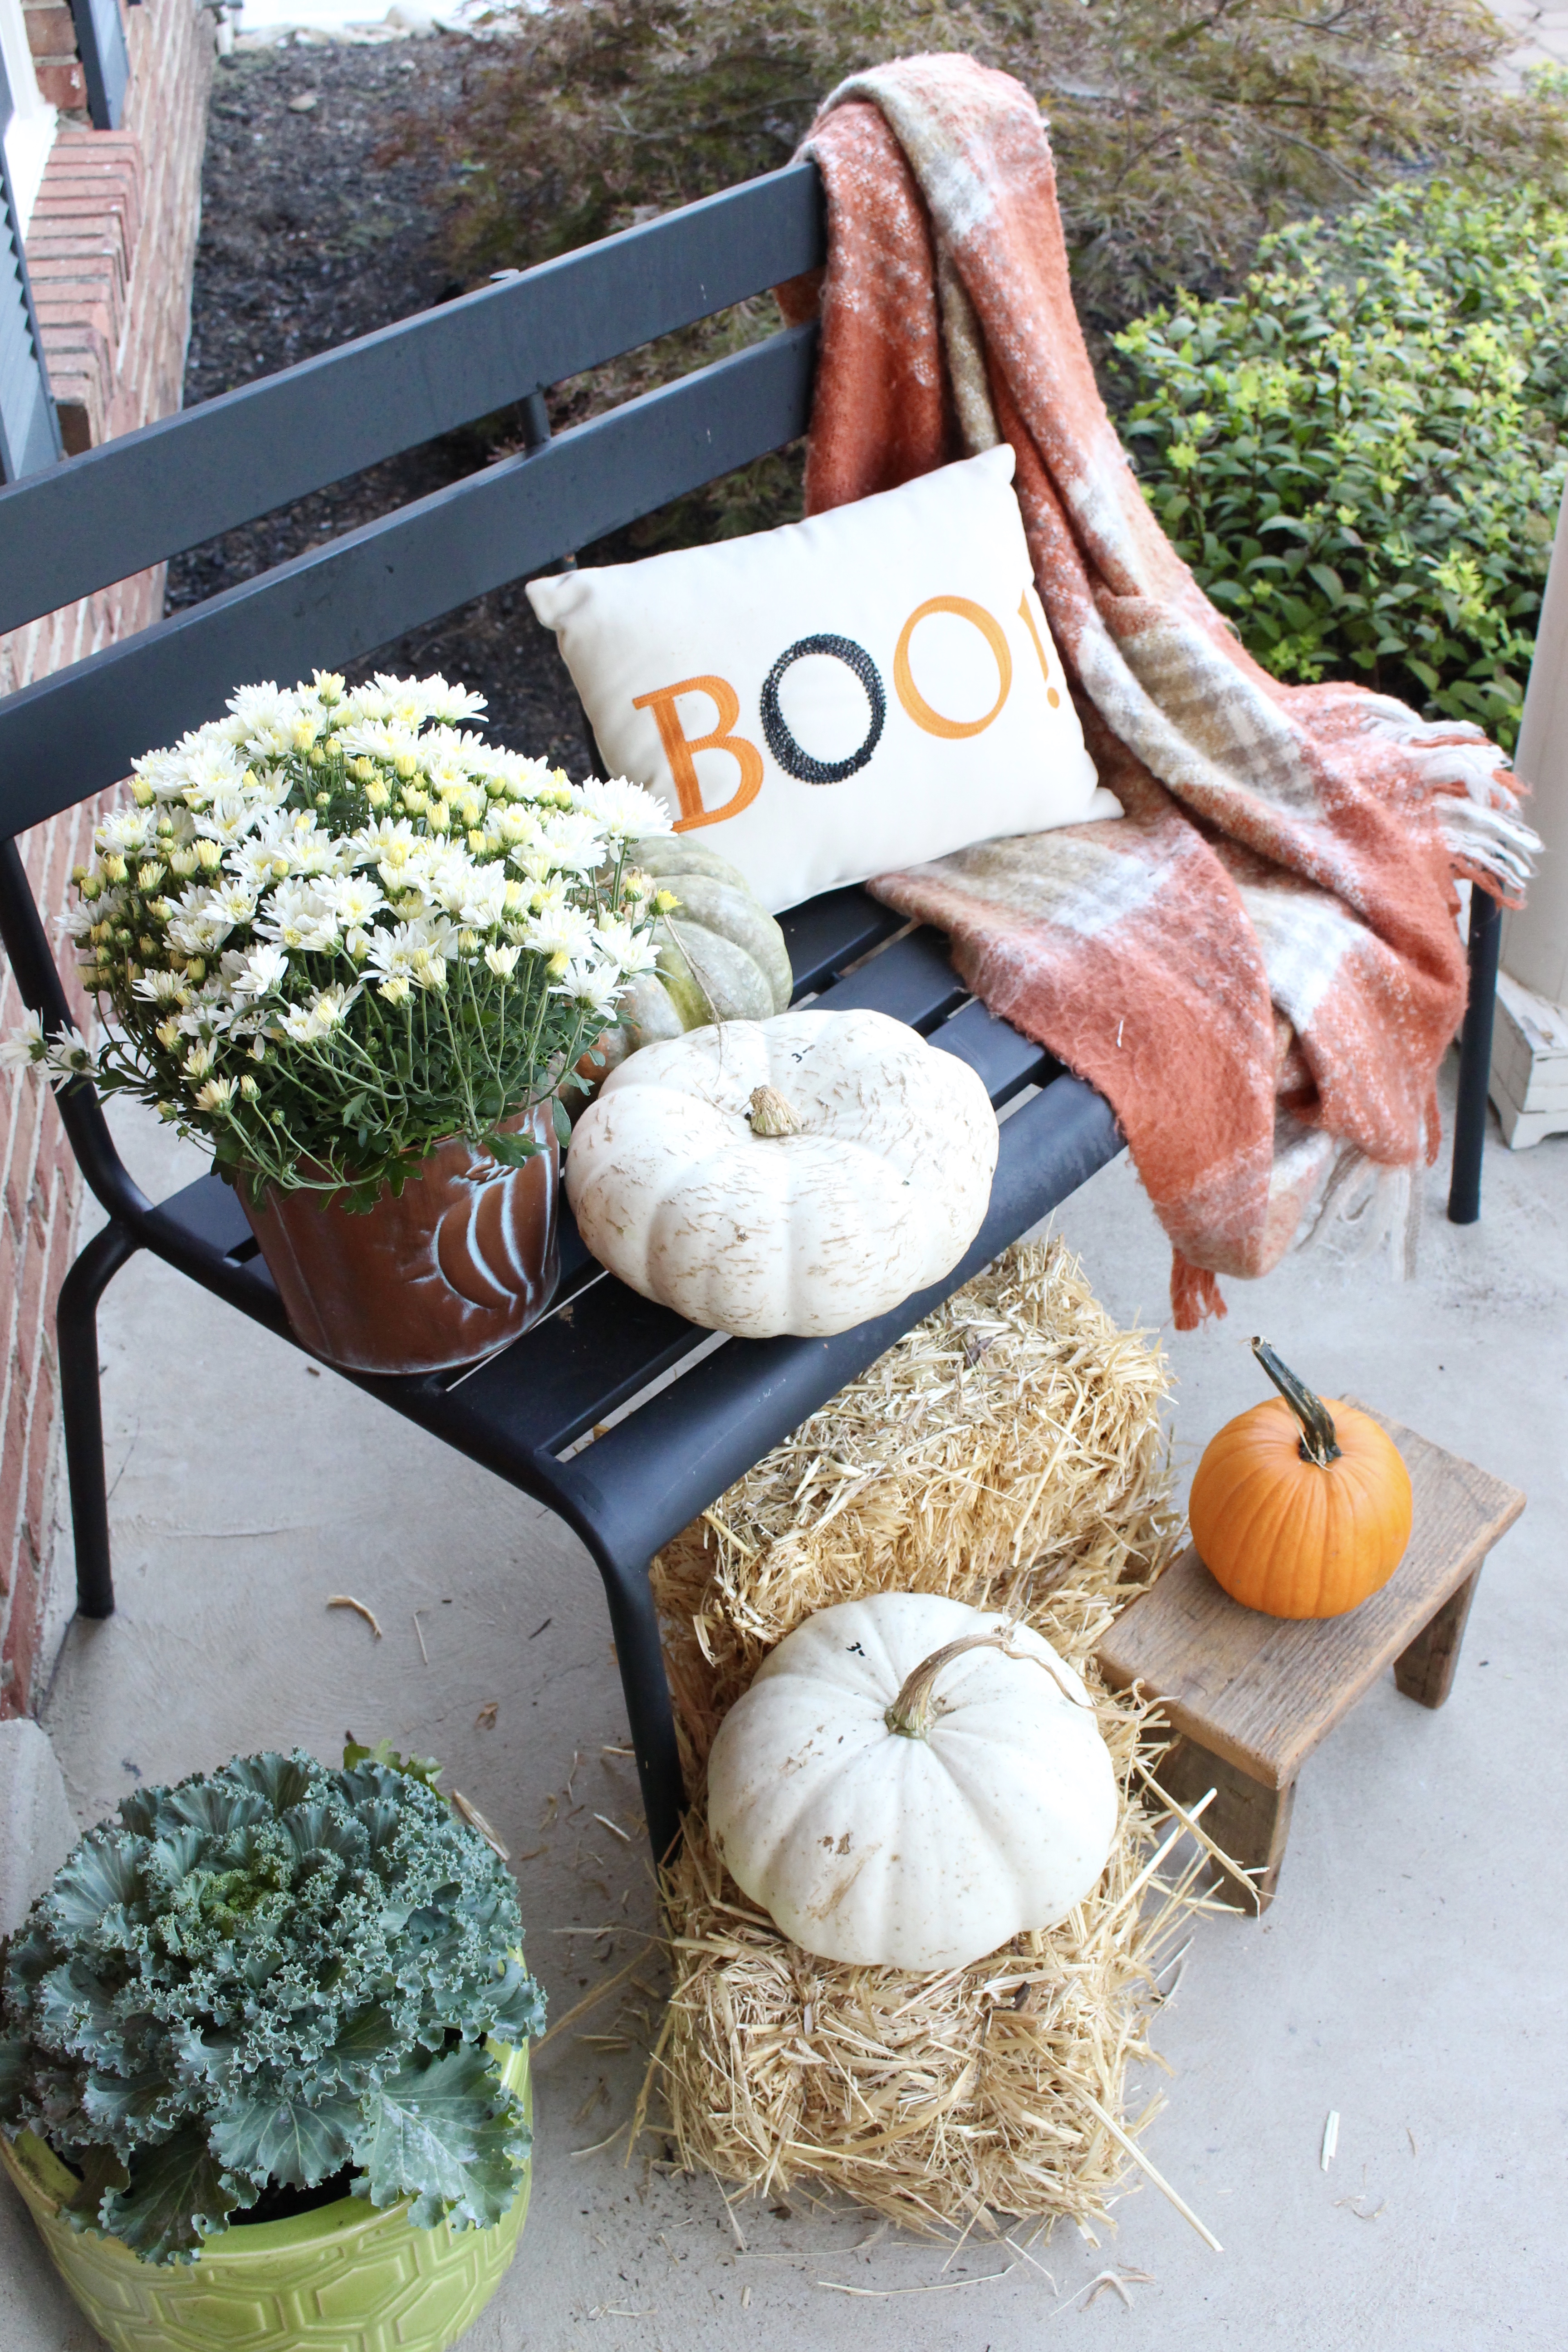 Fall Porch Ideas- Harvest outdoor decor- Decorating for fall- Fall porch- Autumn- Outdoor decor- decorating outdoors for fall- porch- seasonal outdoor decor- pumpkins- mums- Halloween front porch